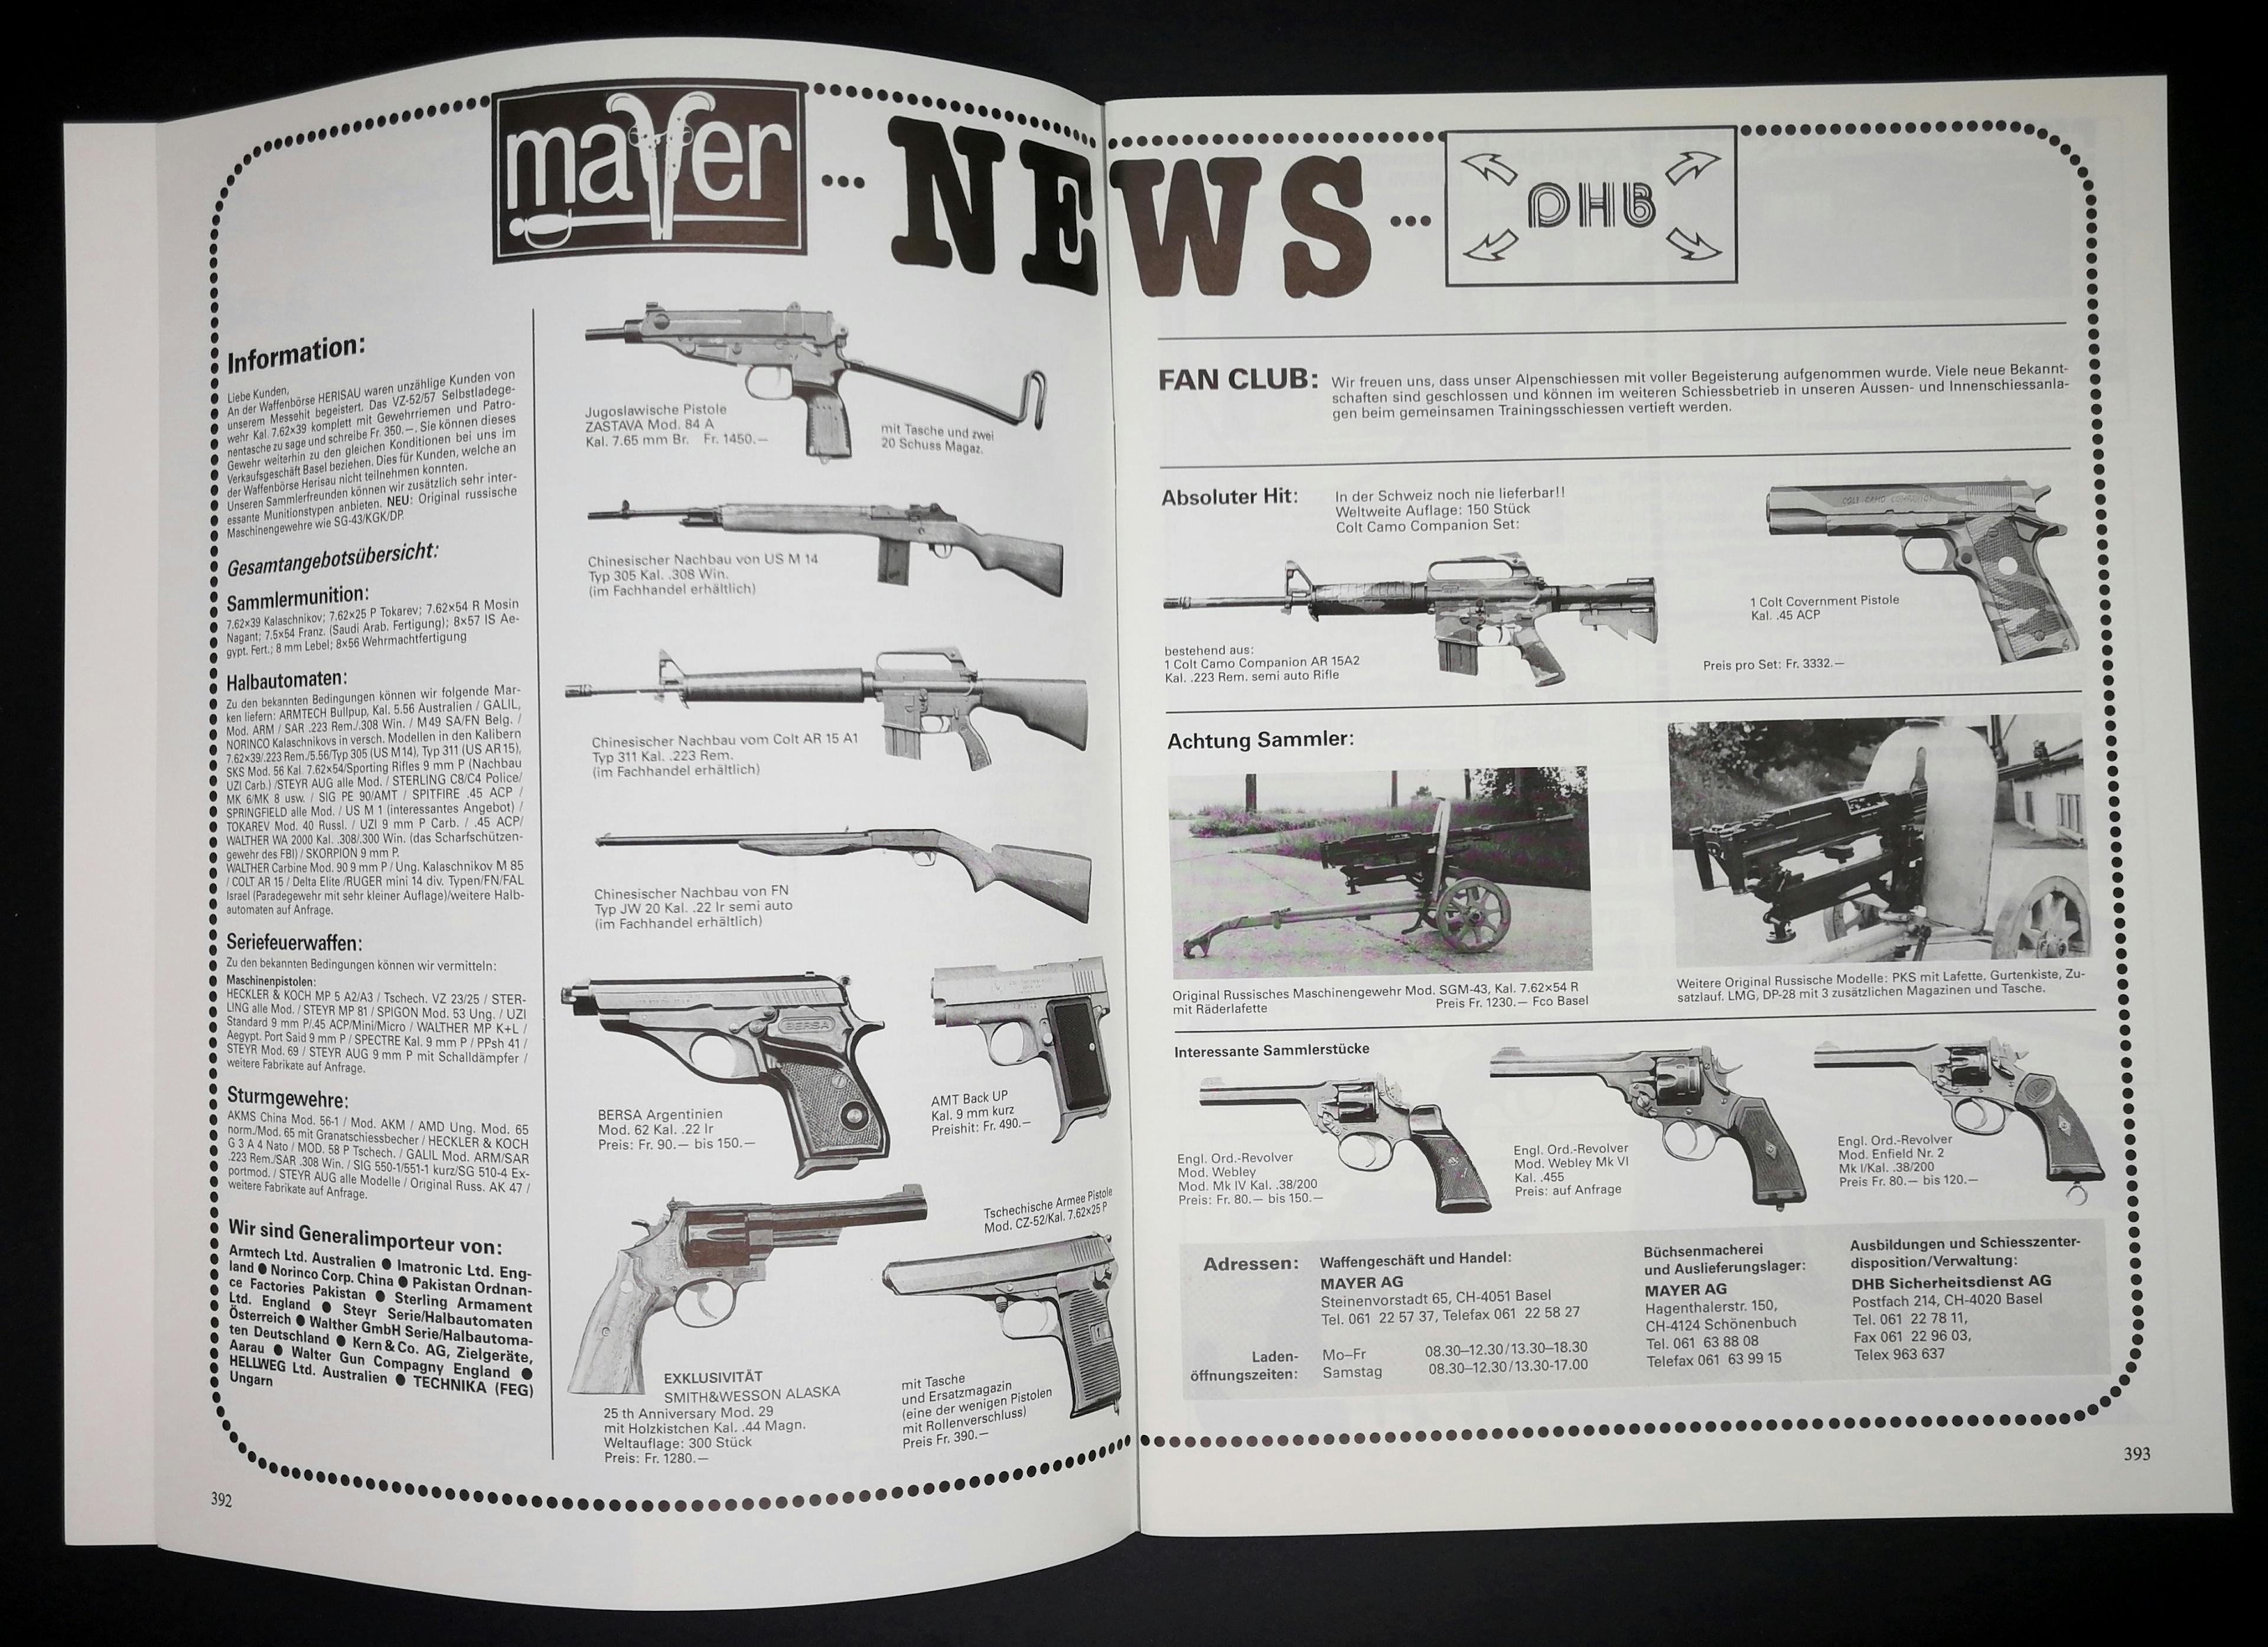 Mayer News! Nebst Norinco M14 und AR15 gibst für knapp 1300 Franken auch original russische Maschinengewehre zu kaufen!
